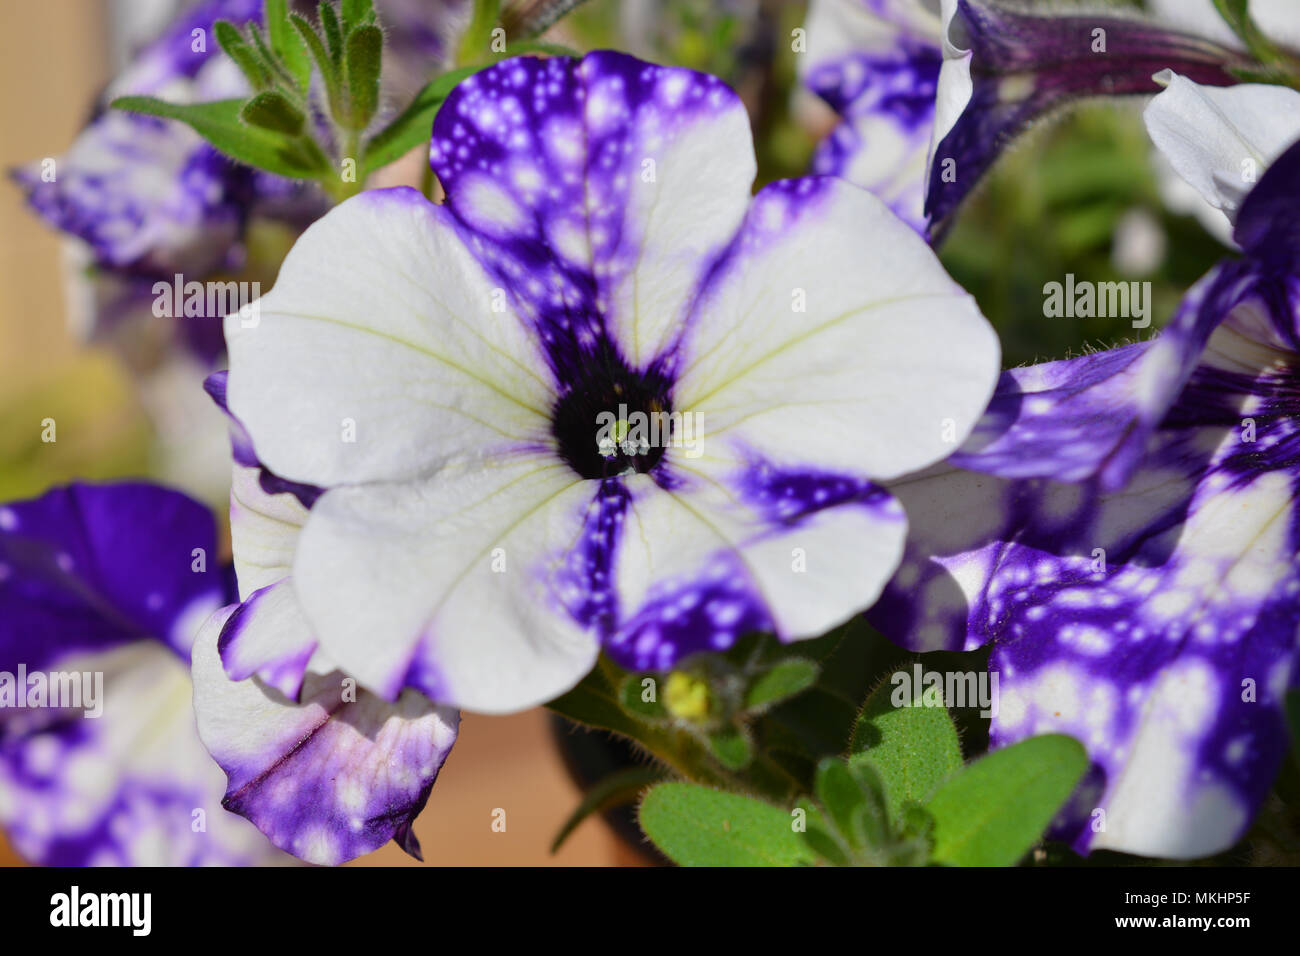 Petunia 'Night Sky', purple flowers Stock Photo